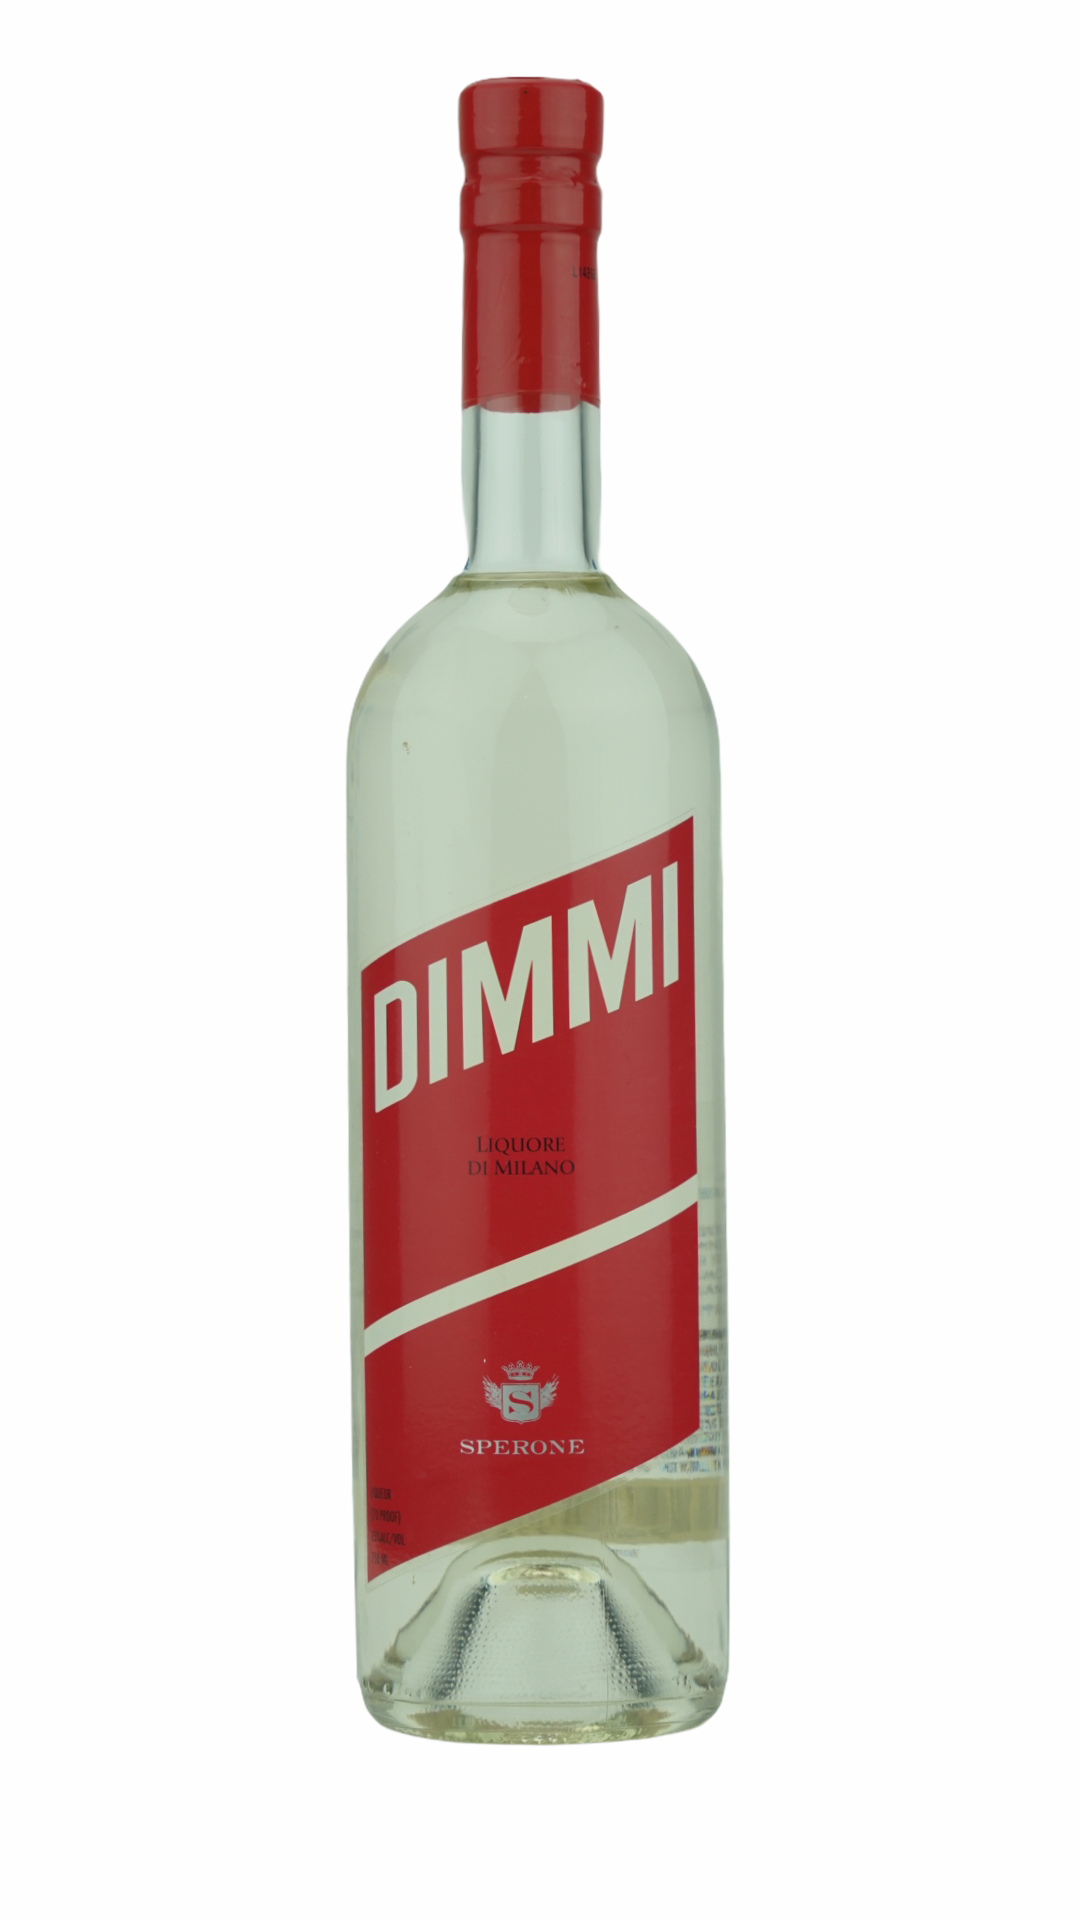 Sperone - "Dimmi" Liquore Di Milano (750ml)